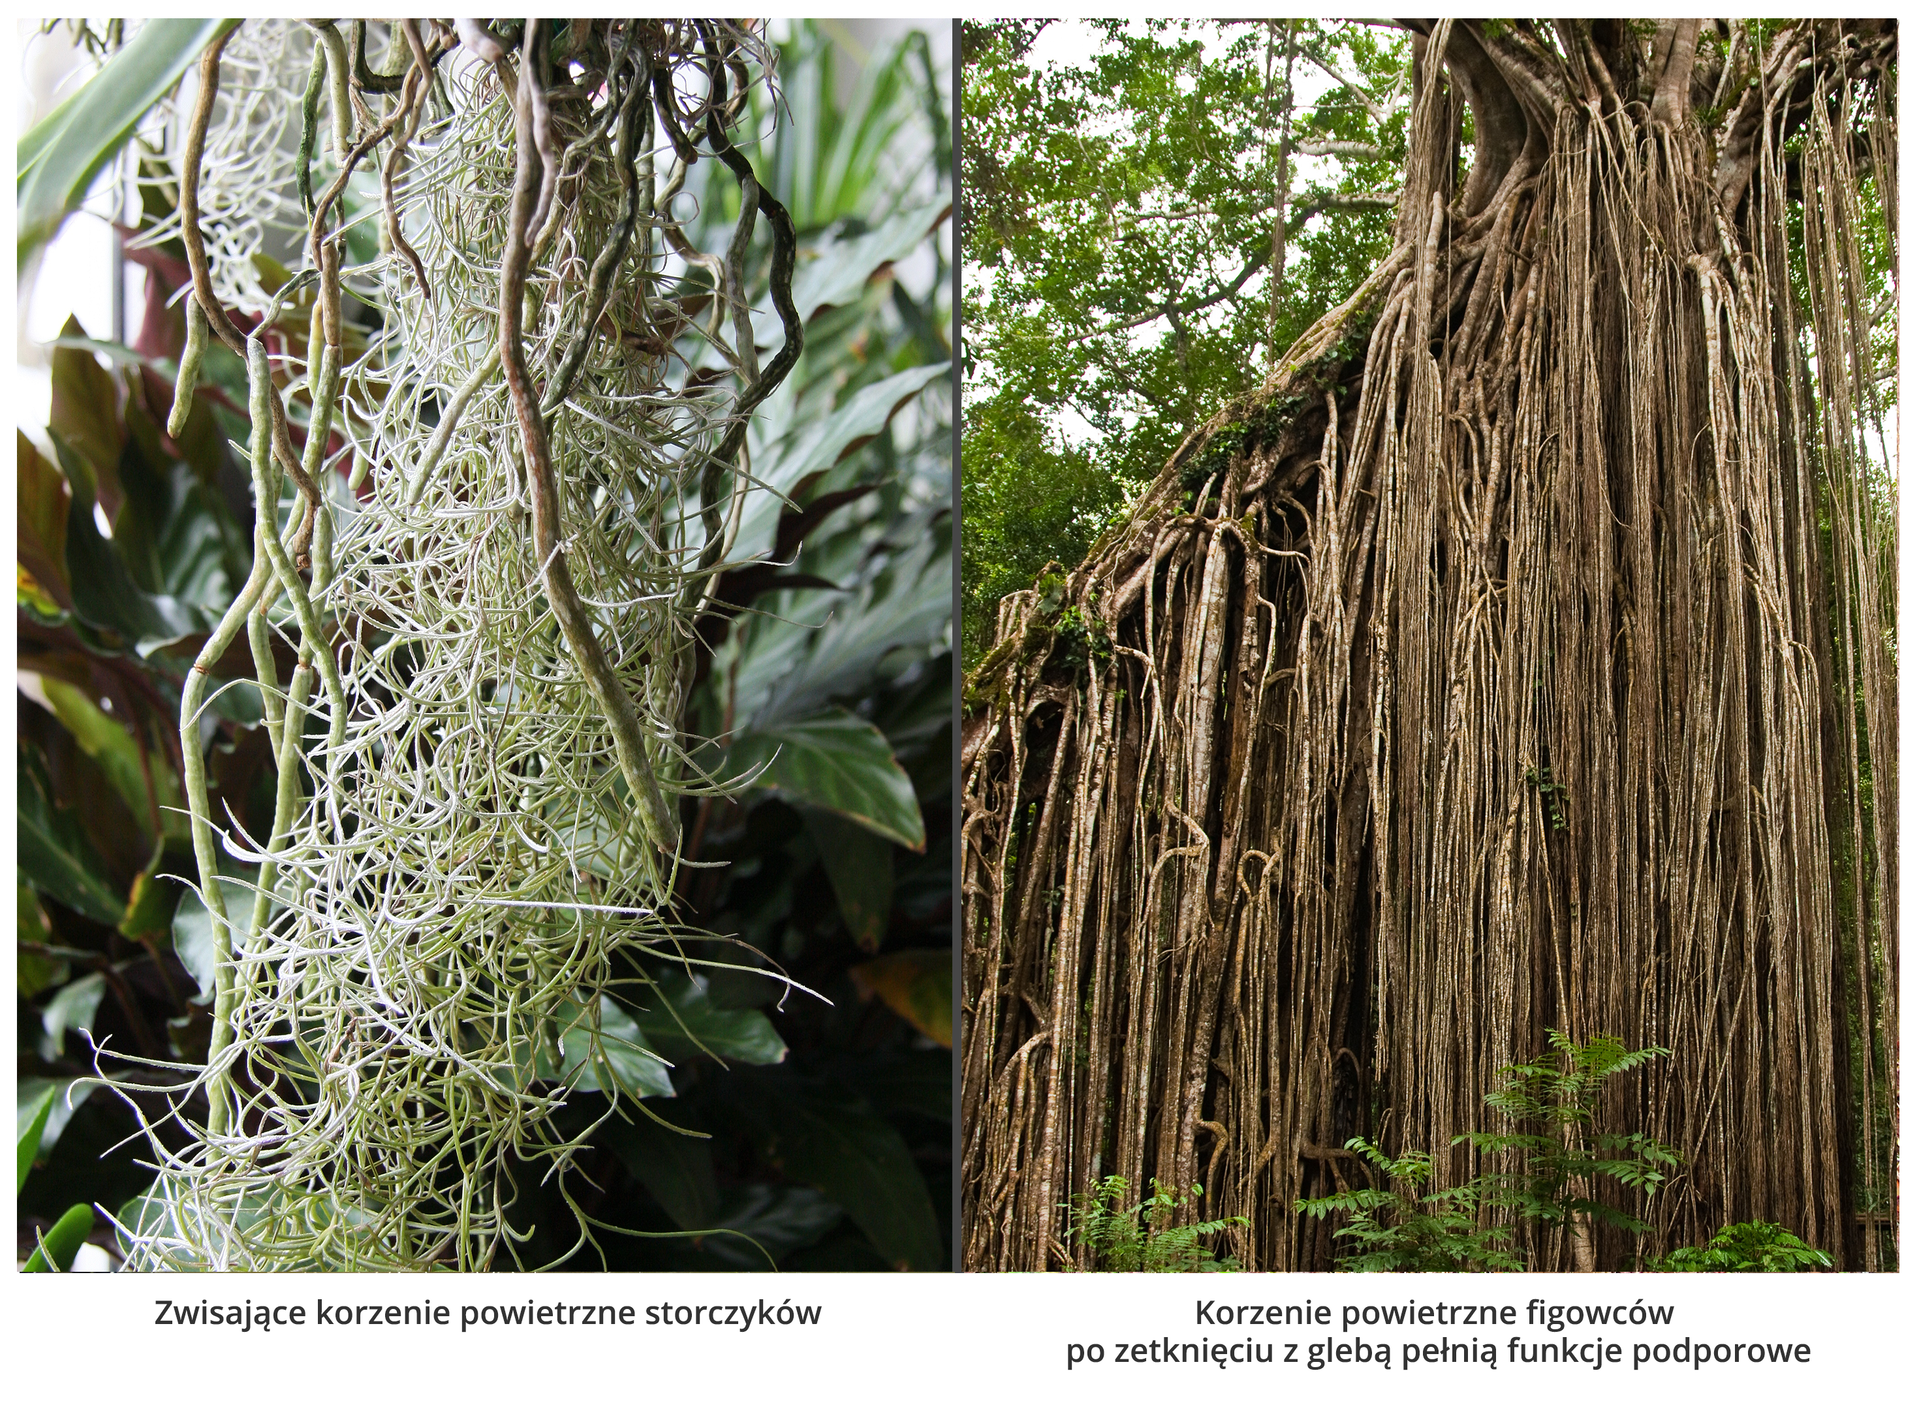 Fotografie przedstawiają dwa rodzaje korzeni powietrznych. Z lewej są białe, zwisające, splątane korzenie storczyków na tle roślin. Z prawej wiele brązowych, cienkich, zwisających korzeni figowca. Po zetknięciu z ziemią korzenie te pełnia również funkcję podporową.